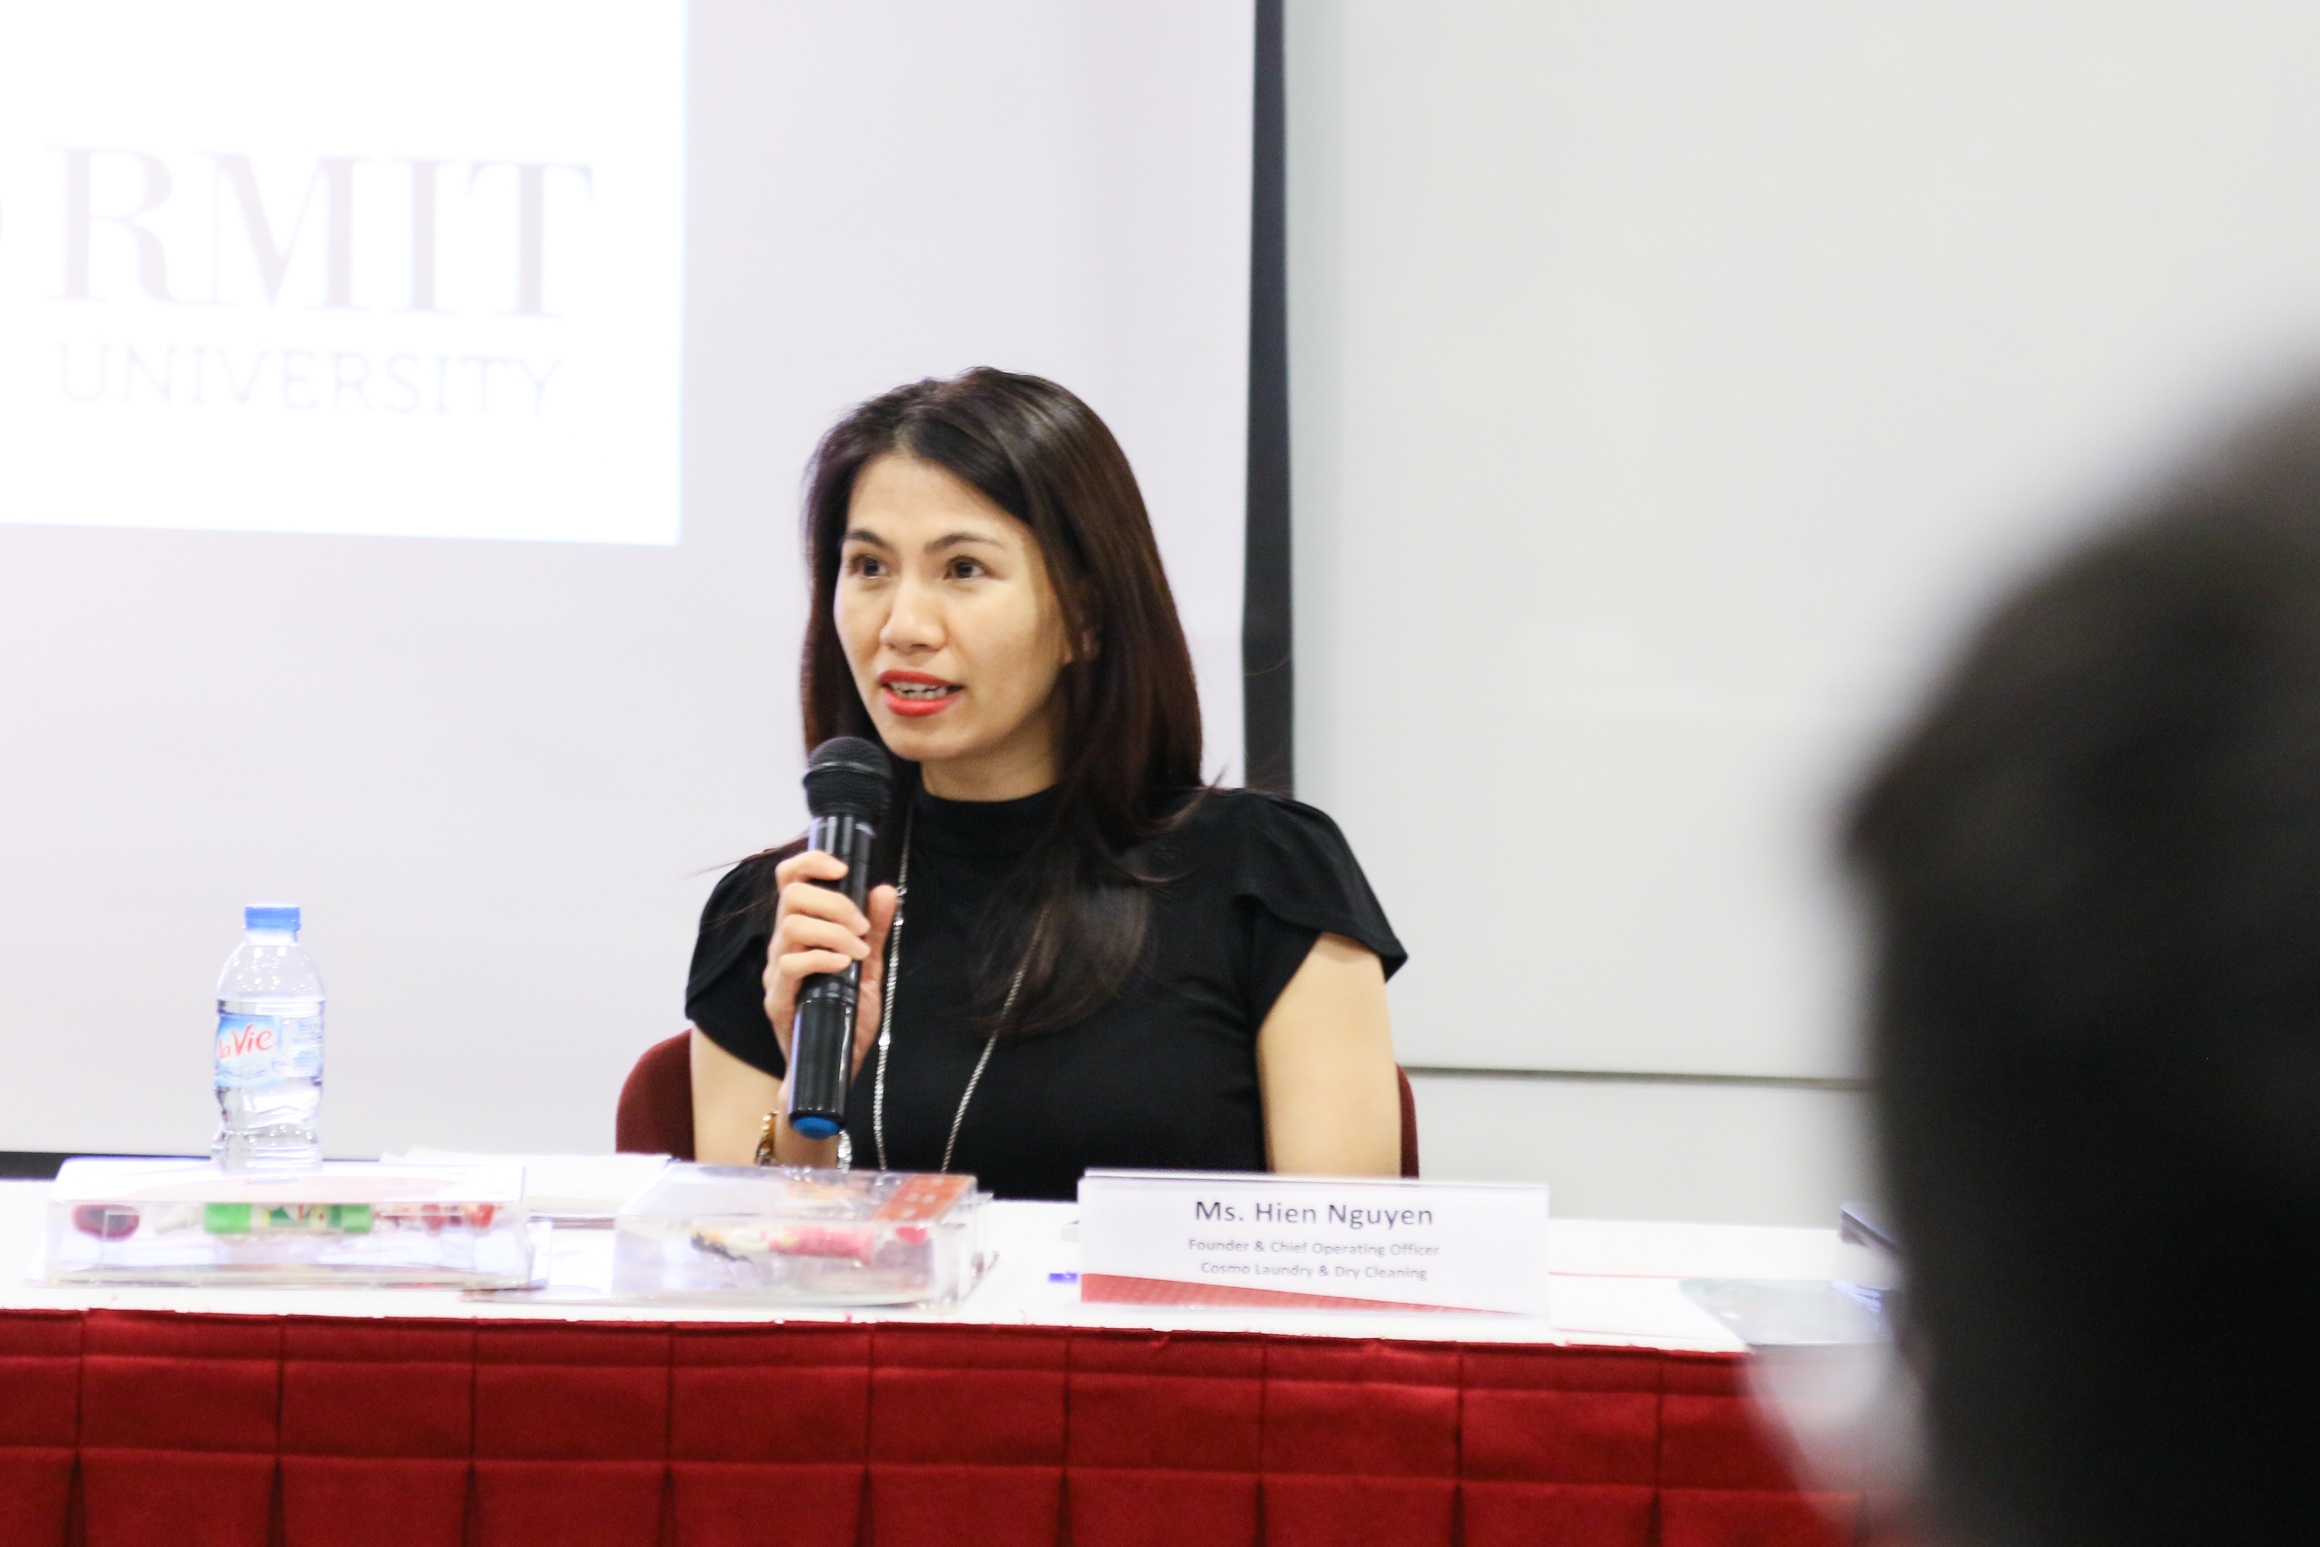 Cô Nguyễn Ái Hiền – thạc sĩ ngành Quản trị kinh doanh RMIT Việt Nam và là Giám đốc điều hành Công ty Giặt là Cosmo.